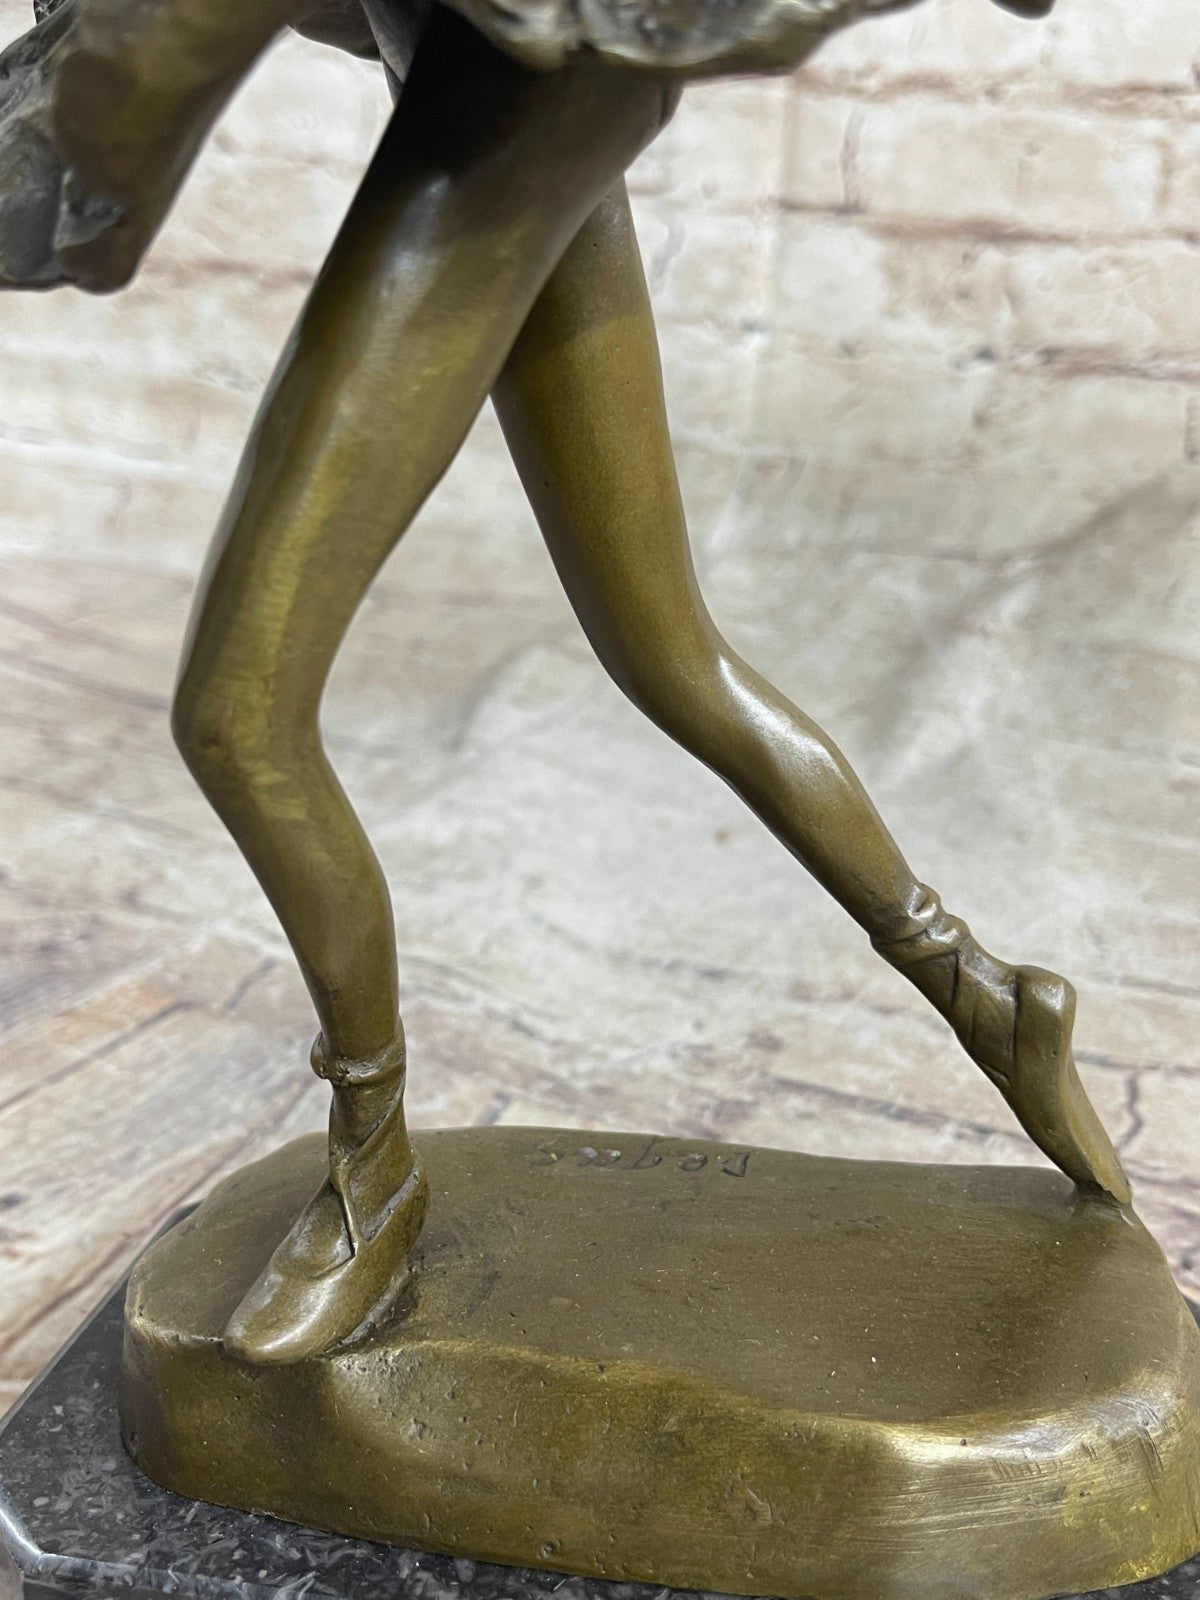 Handcrafted Detailed Little Ballerina Modern Art Bronze Sculpture Figurine